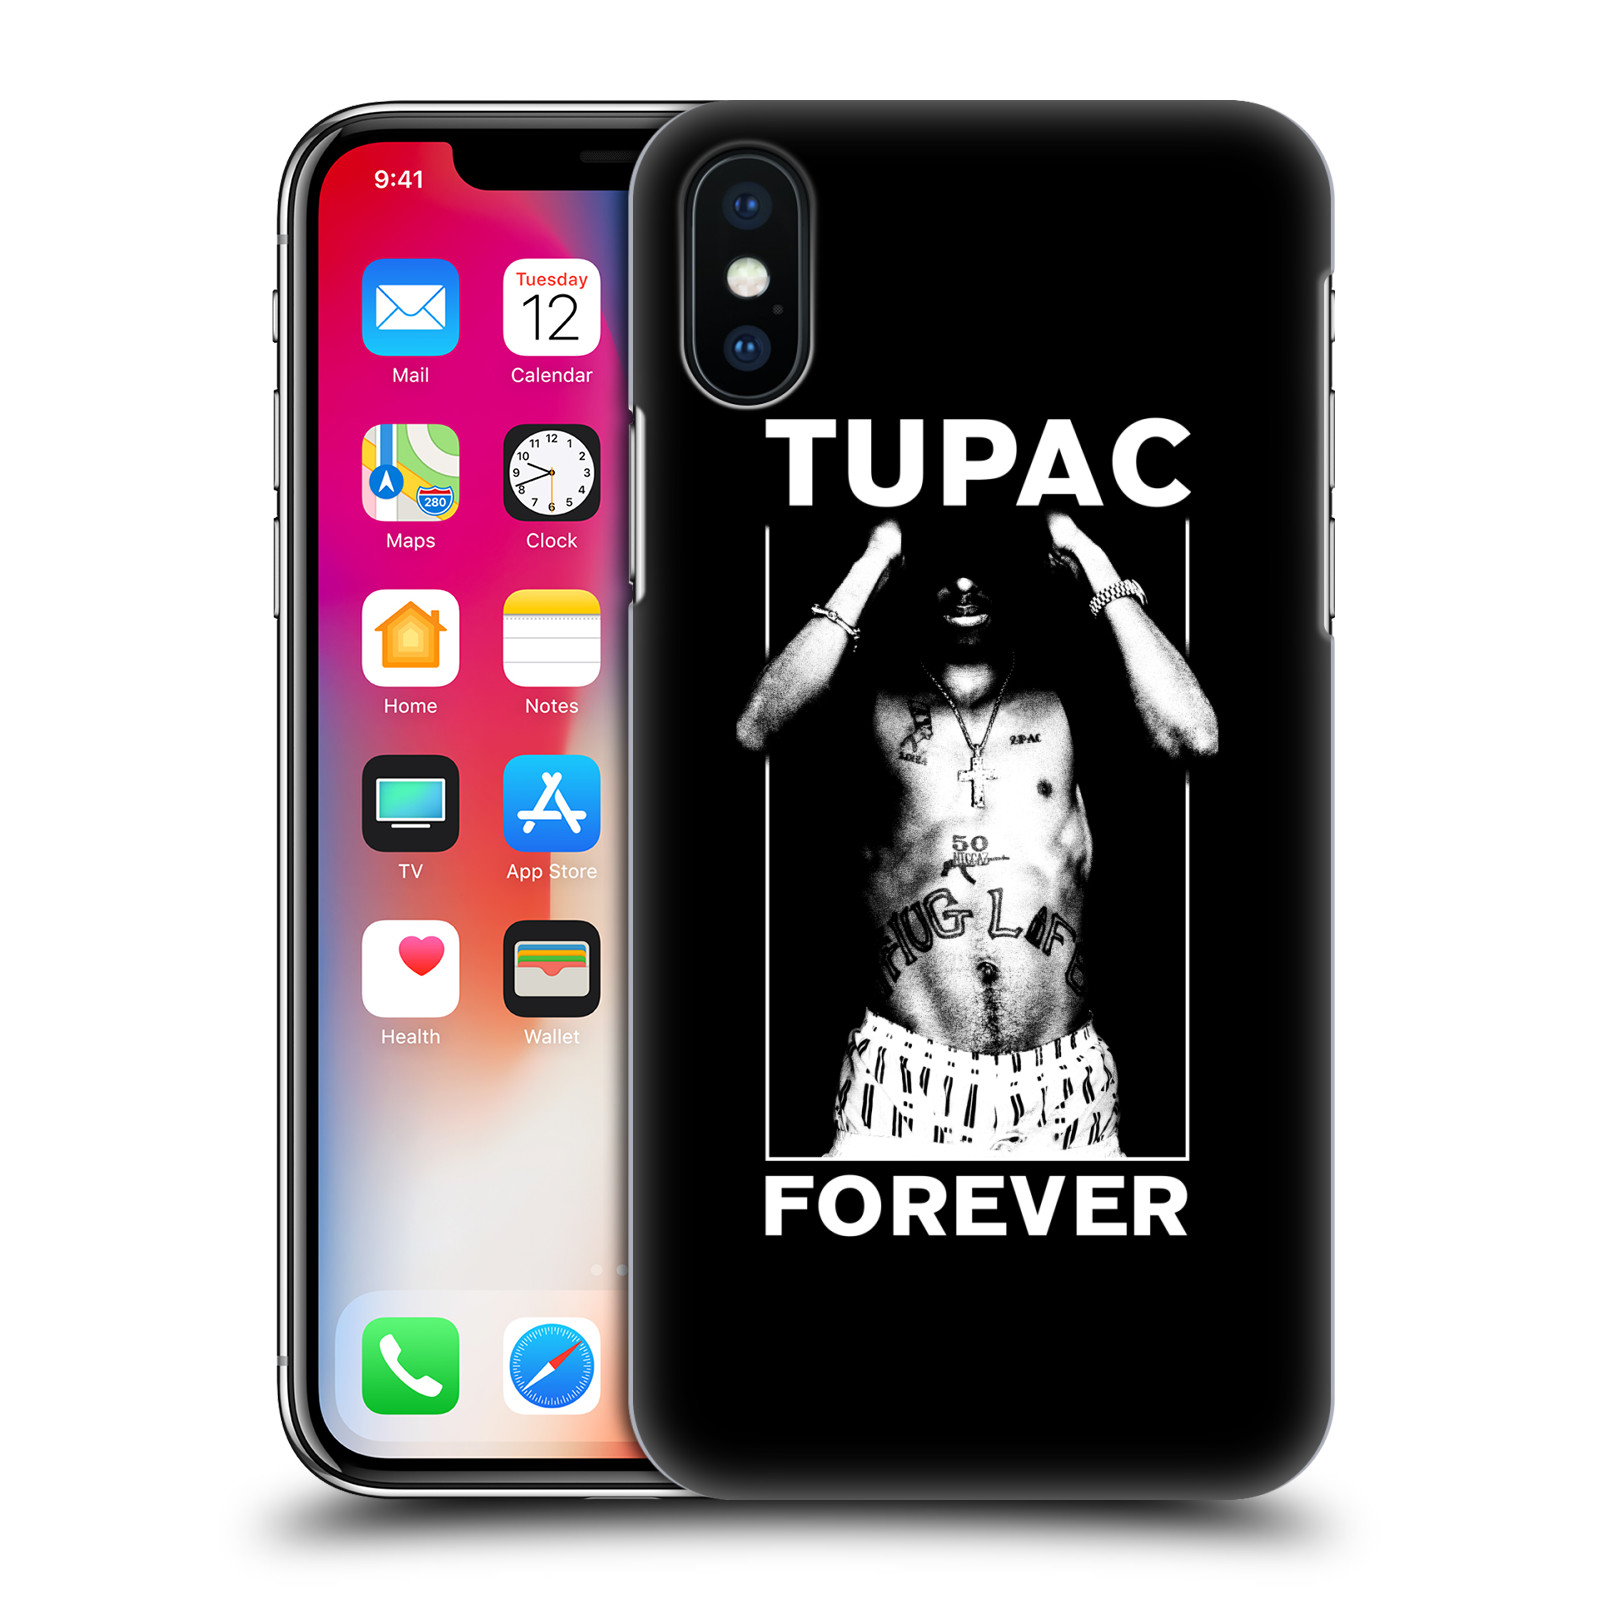 HEAD CASE plastový obal na mobil Apple Iphone X / XS Zpěvák rapper Tupac Shakur 2Pac bílý popisek FOREVER